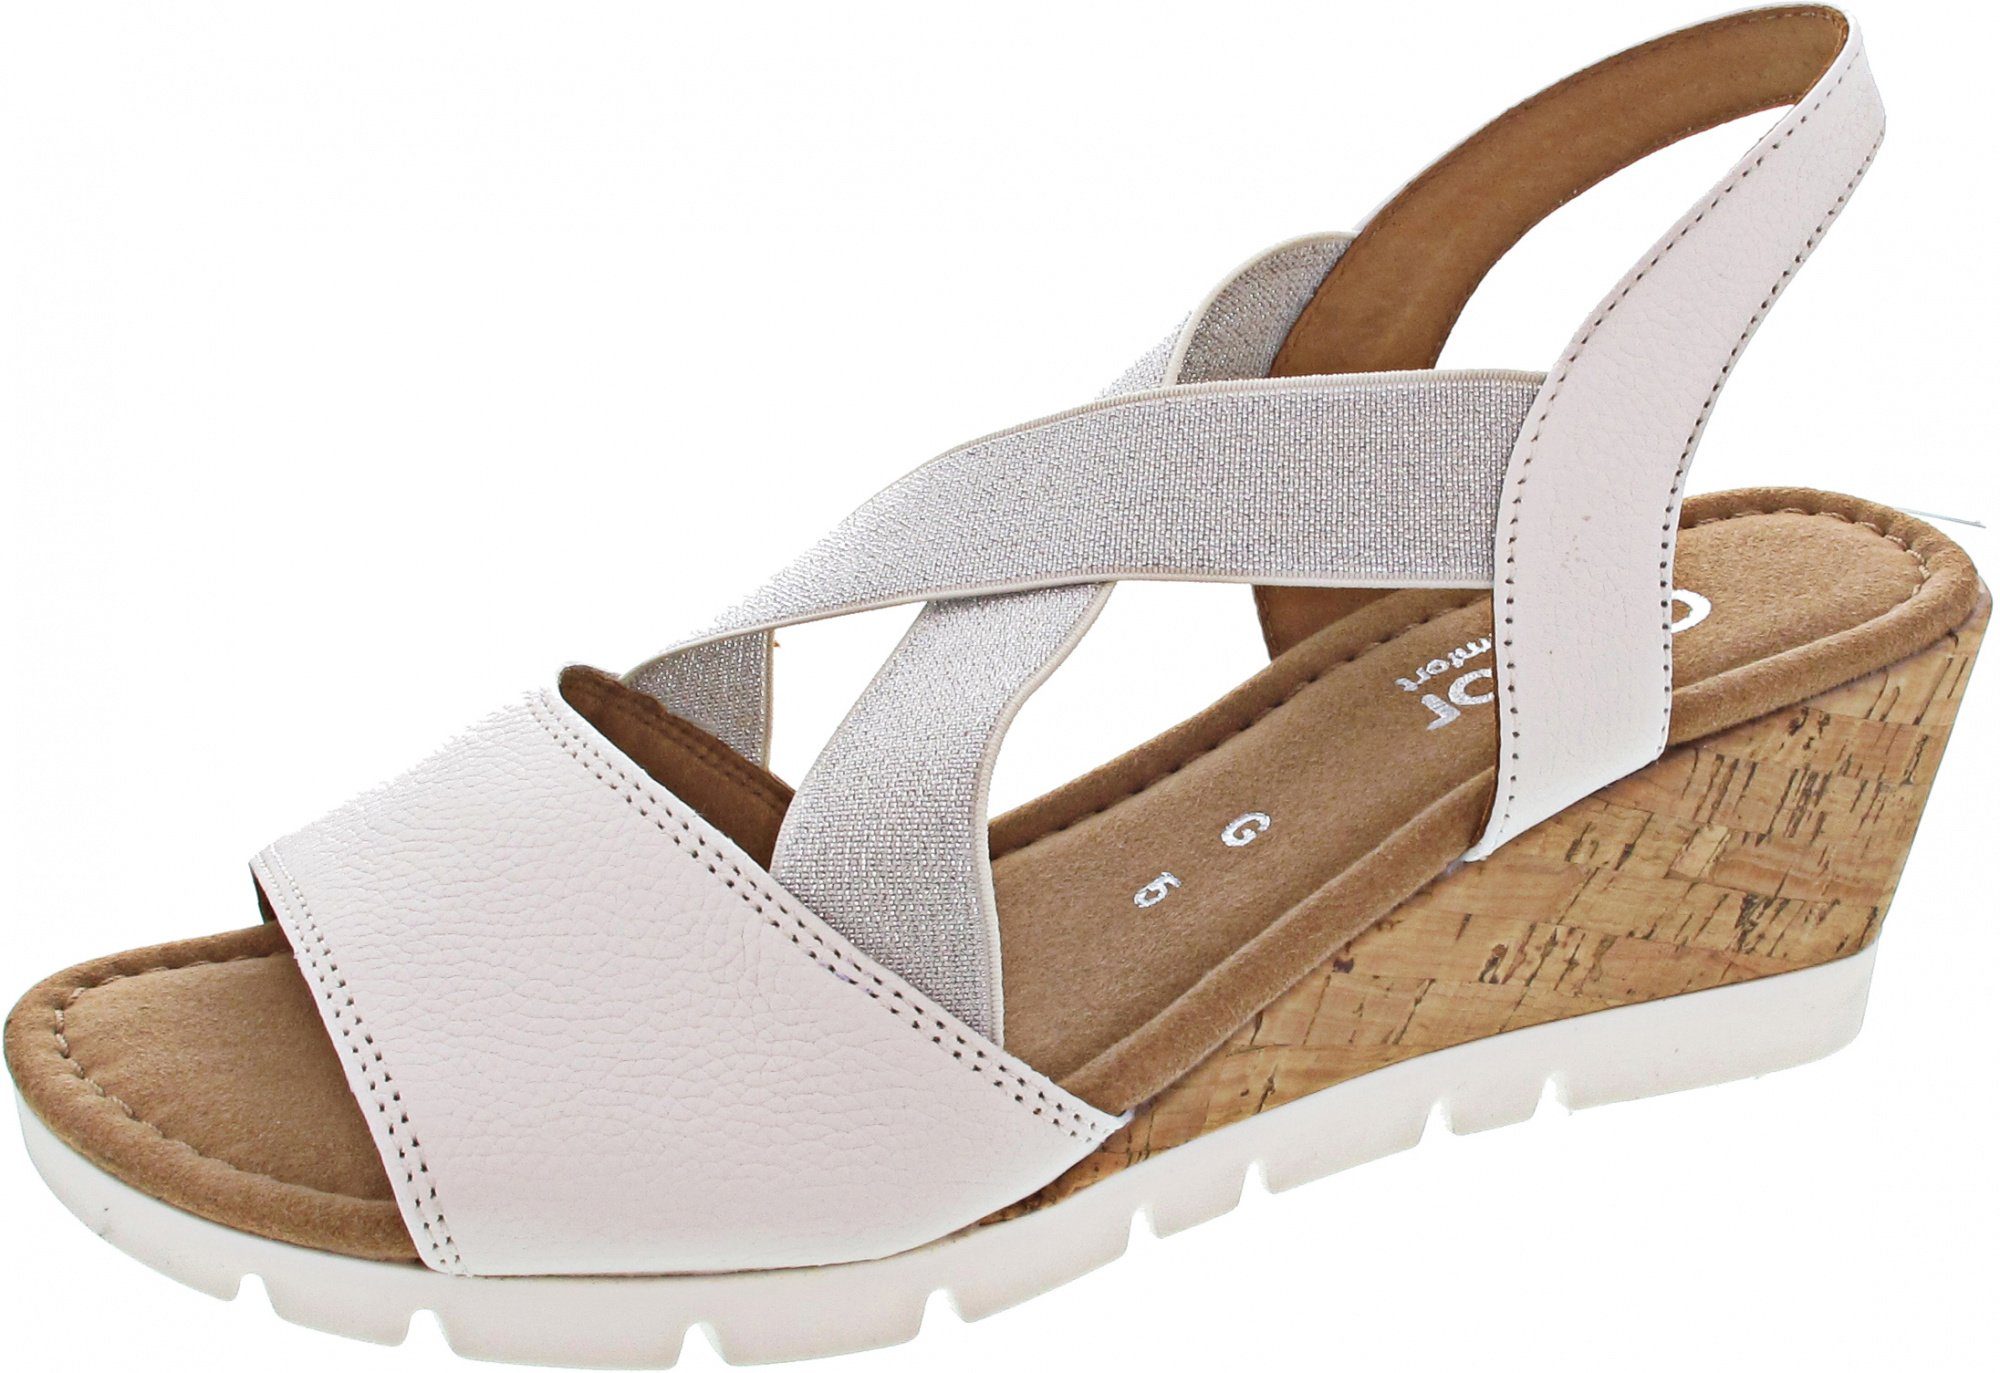 Gabor Comfort »Tunis« Sandale online kaufen | OTTO